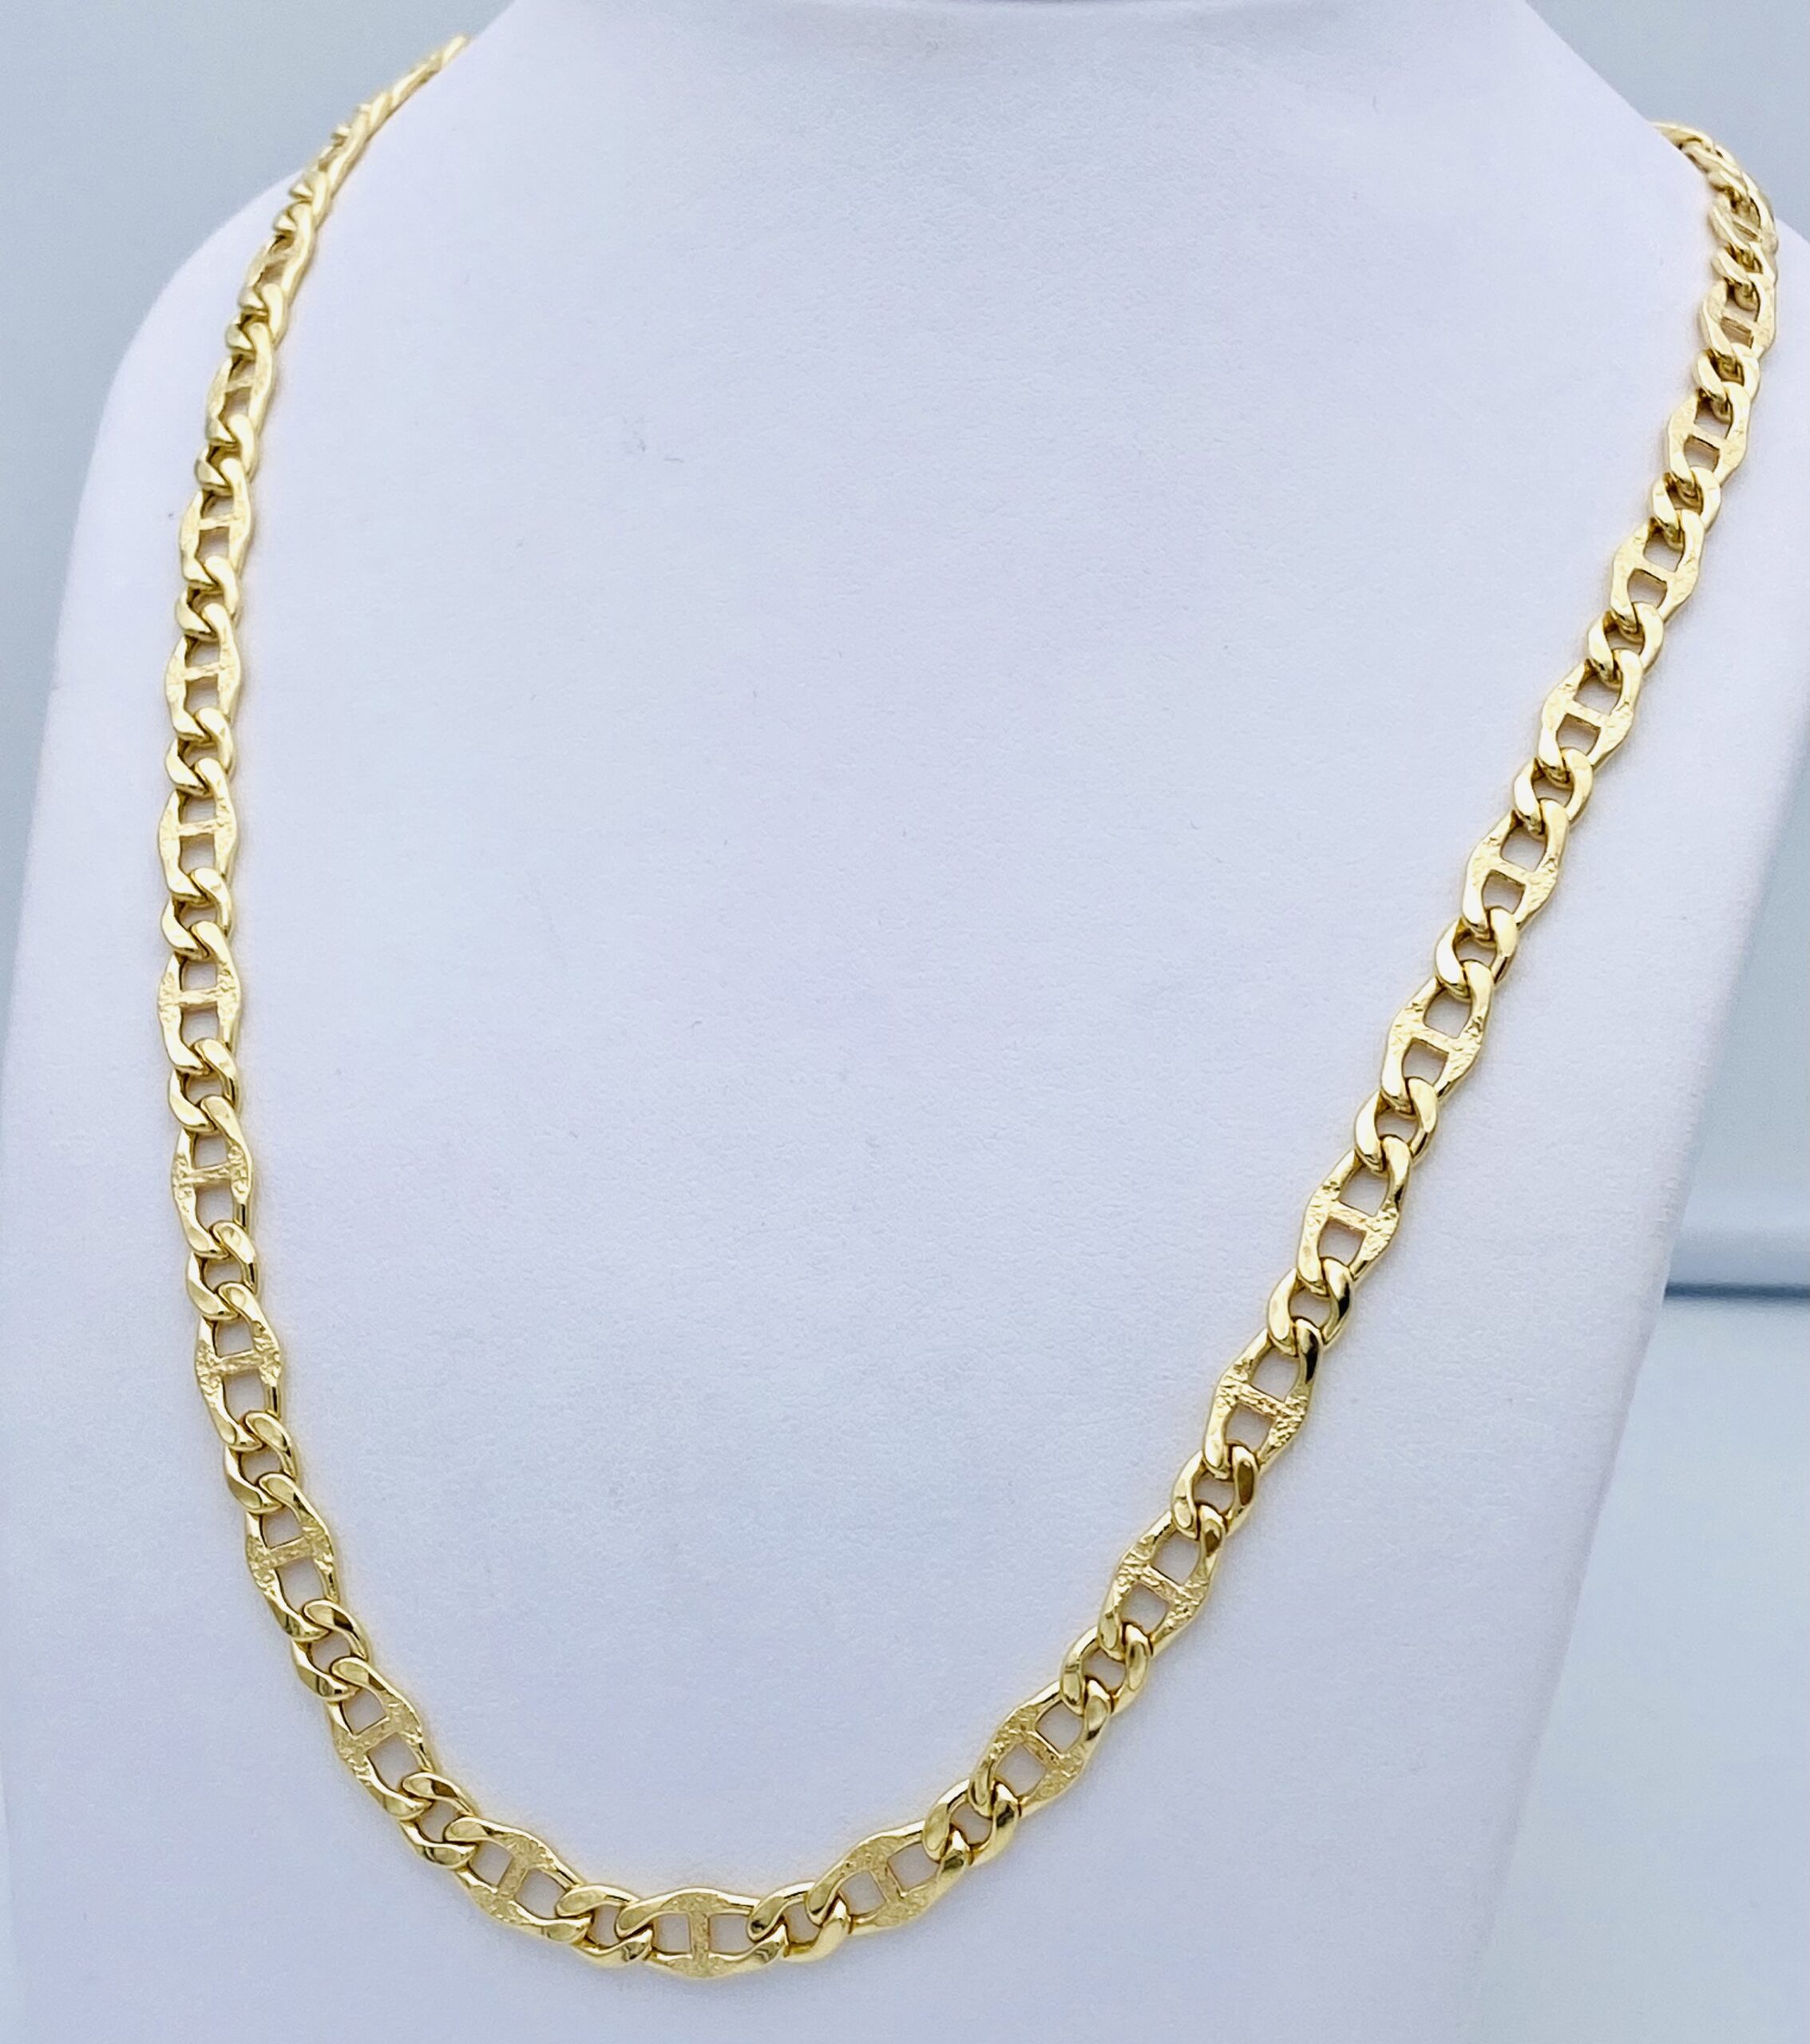 Men's gold round necklace 750% GR. 16,20 ART. CORC12